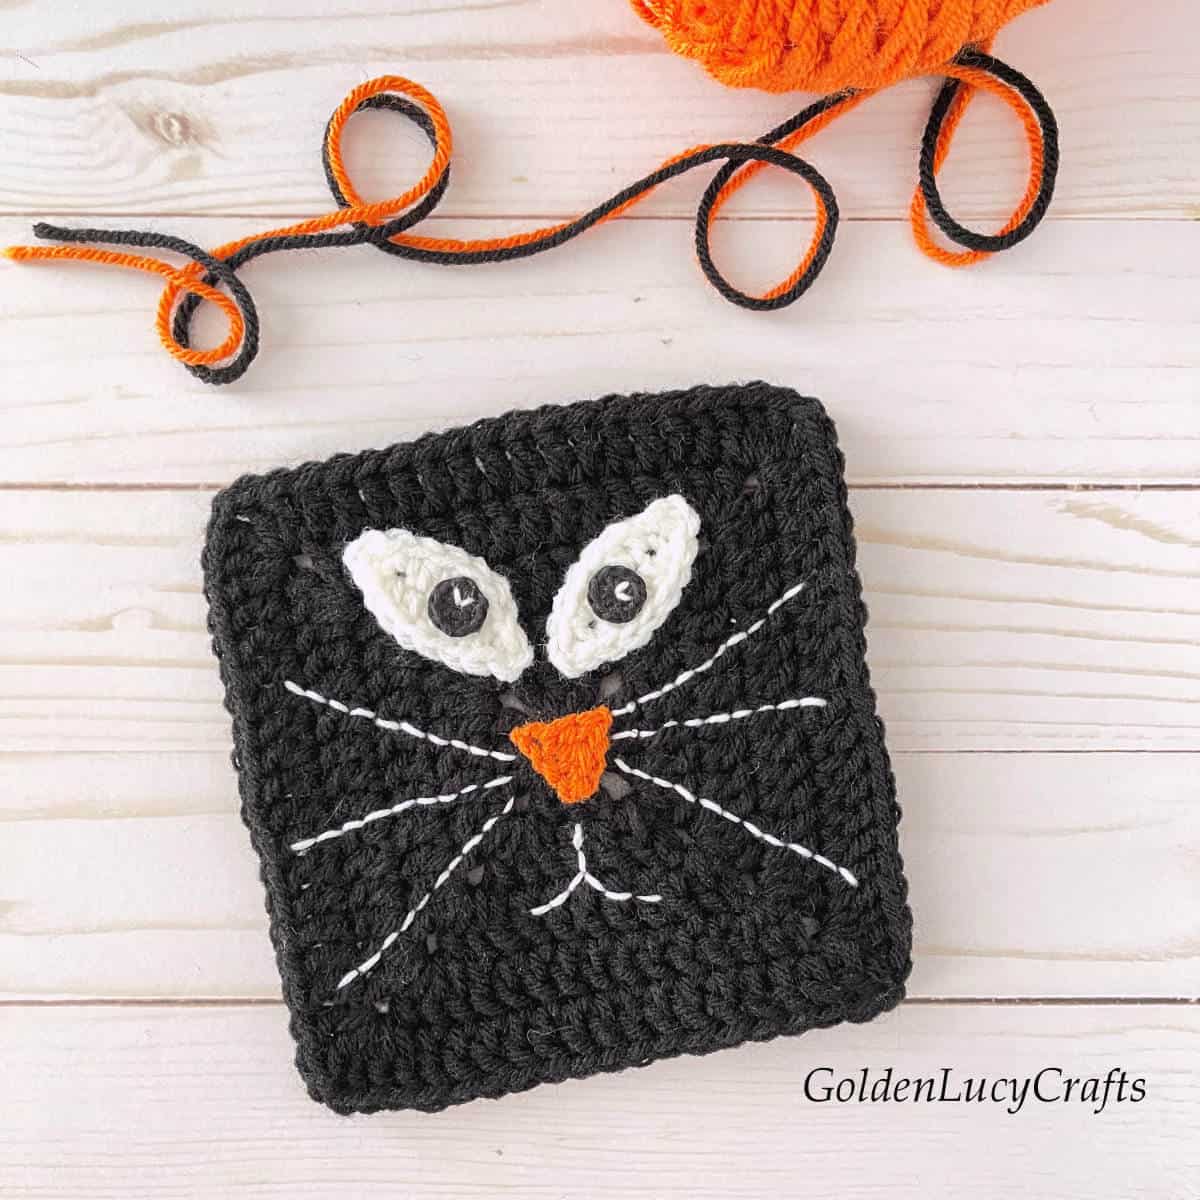 Crochet black cat square for Halloween.